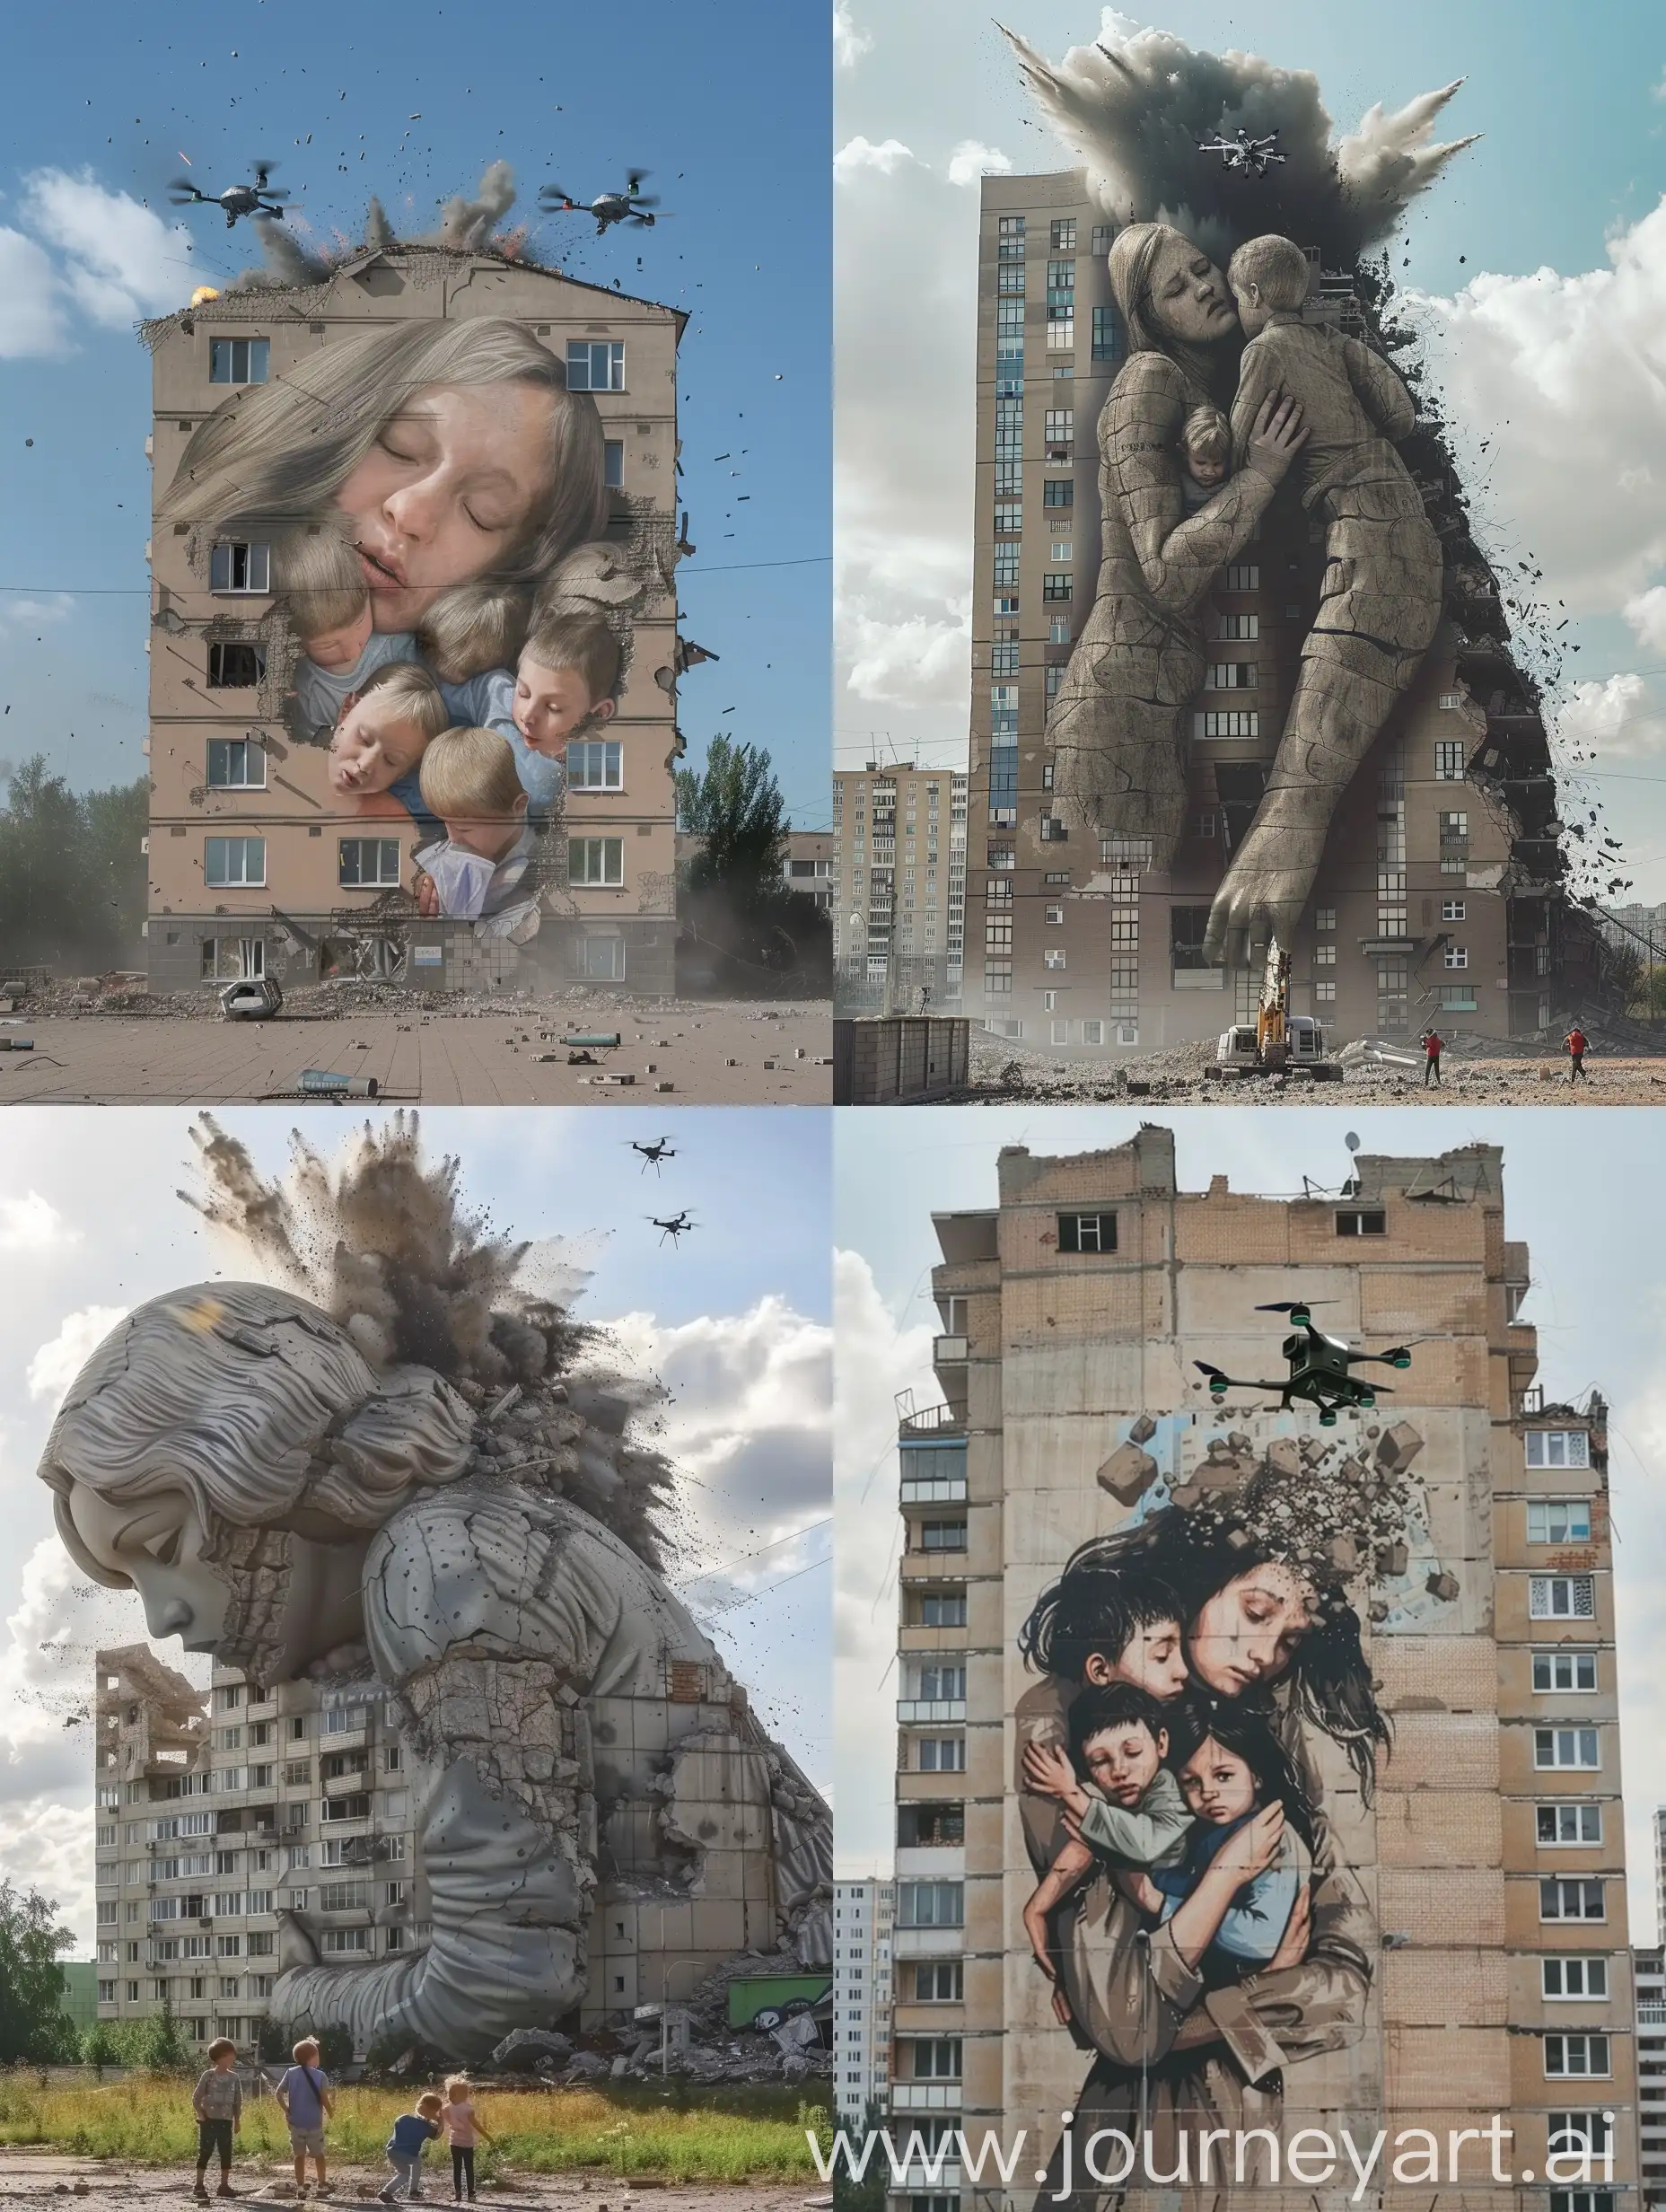 Многоквартирное здание в  Украине, которое выглядит как женщина склонилась над тремя детьми, защищая их собой, но при этом разрушается от взрывного удара ей в спину российским дроном 